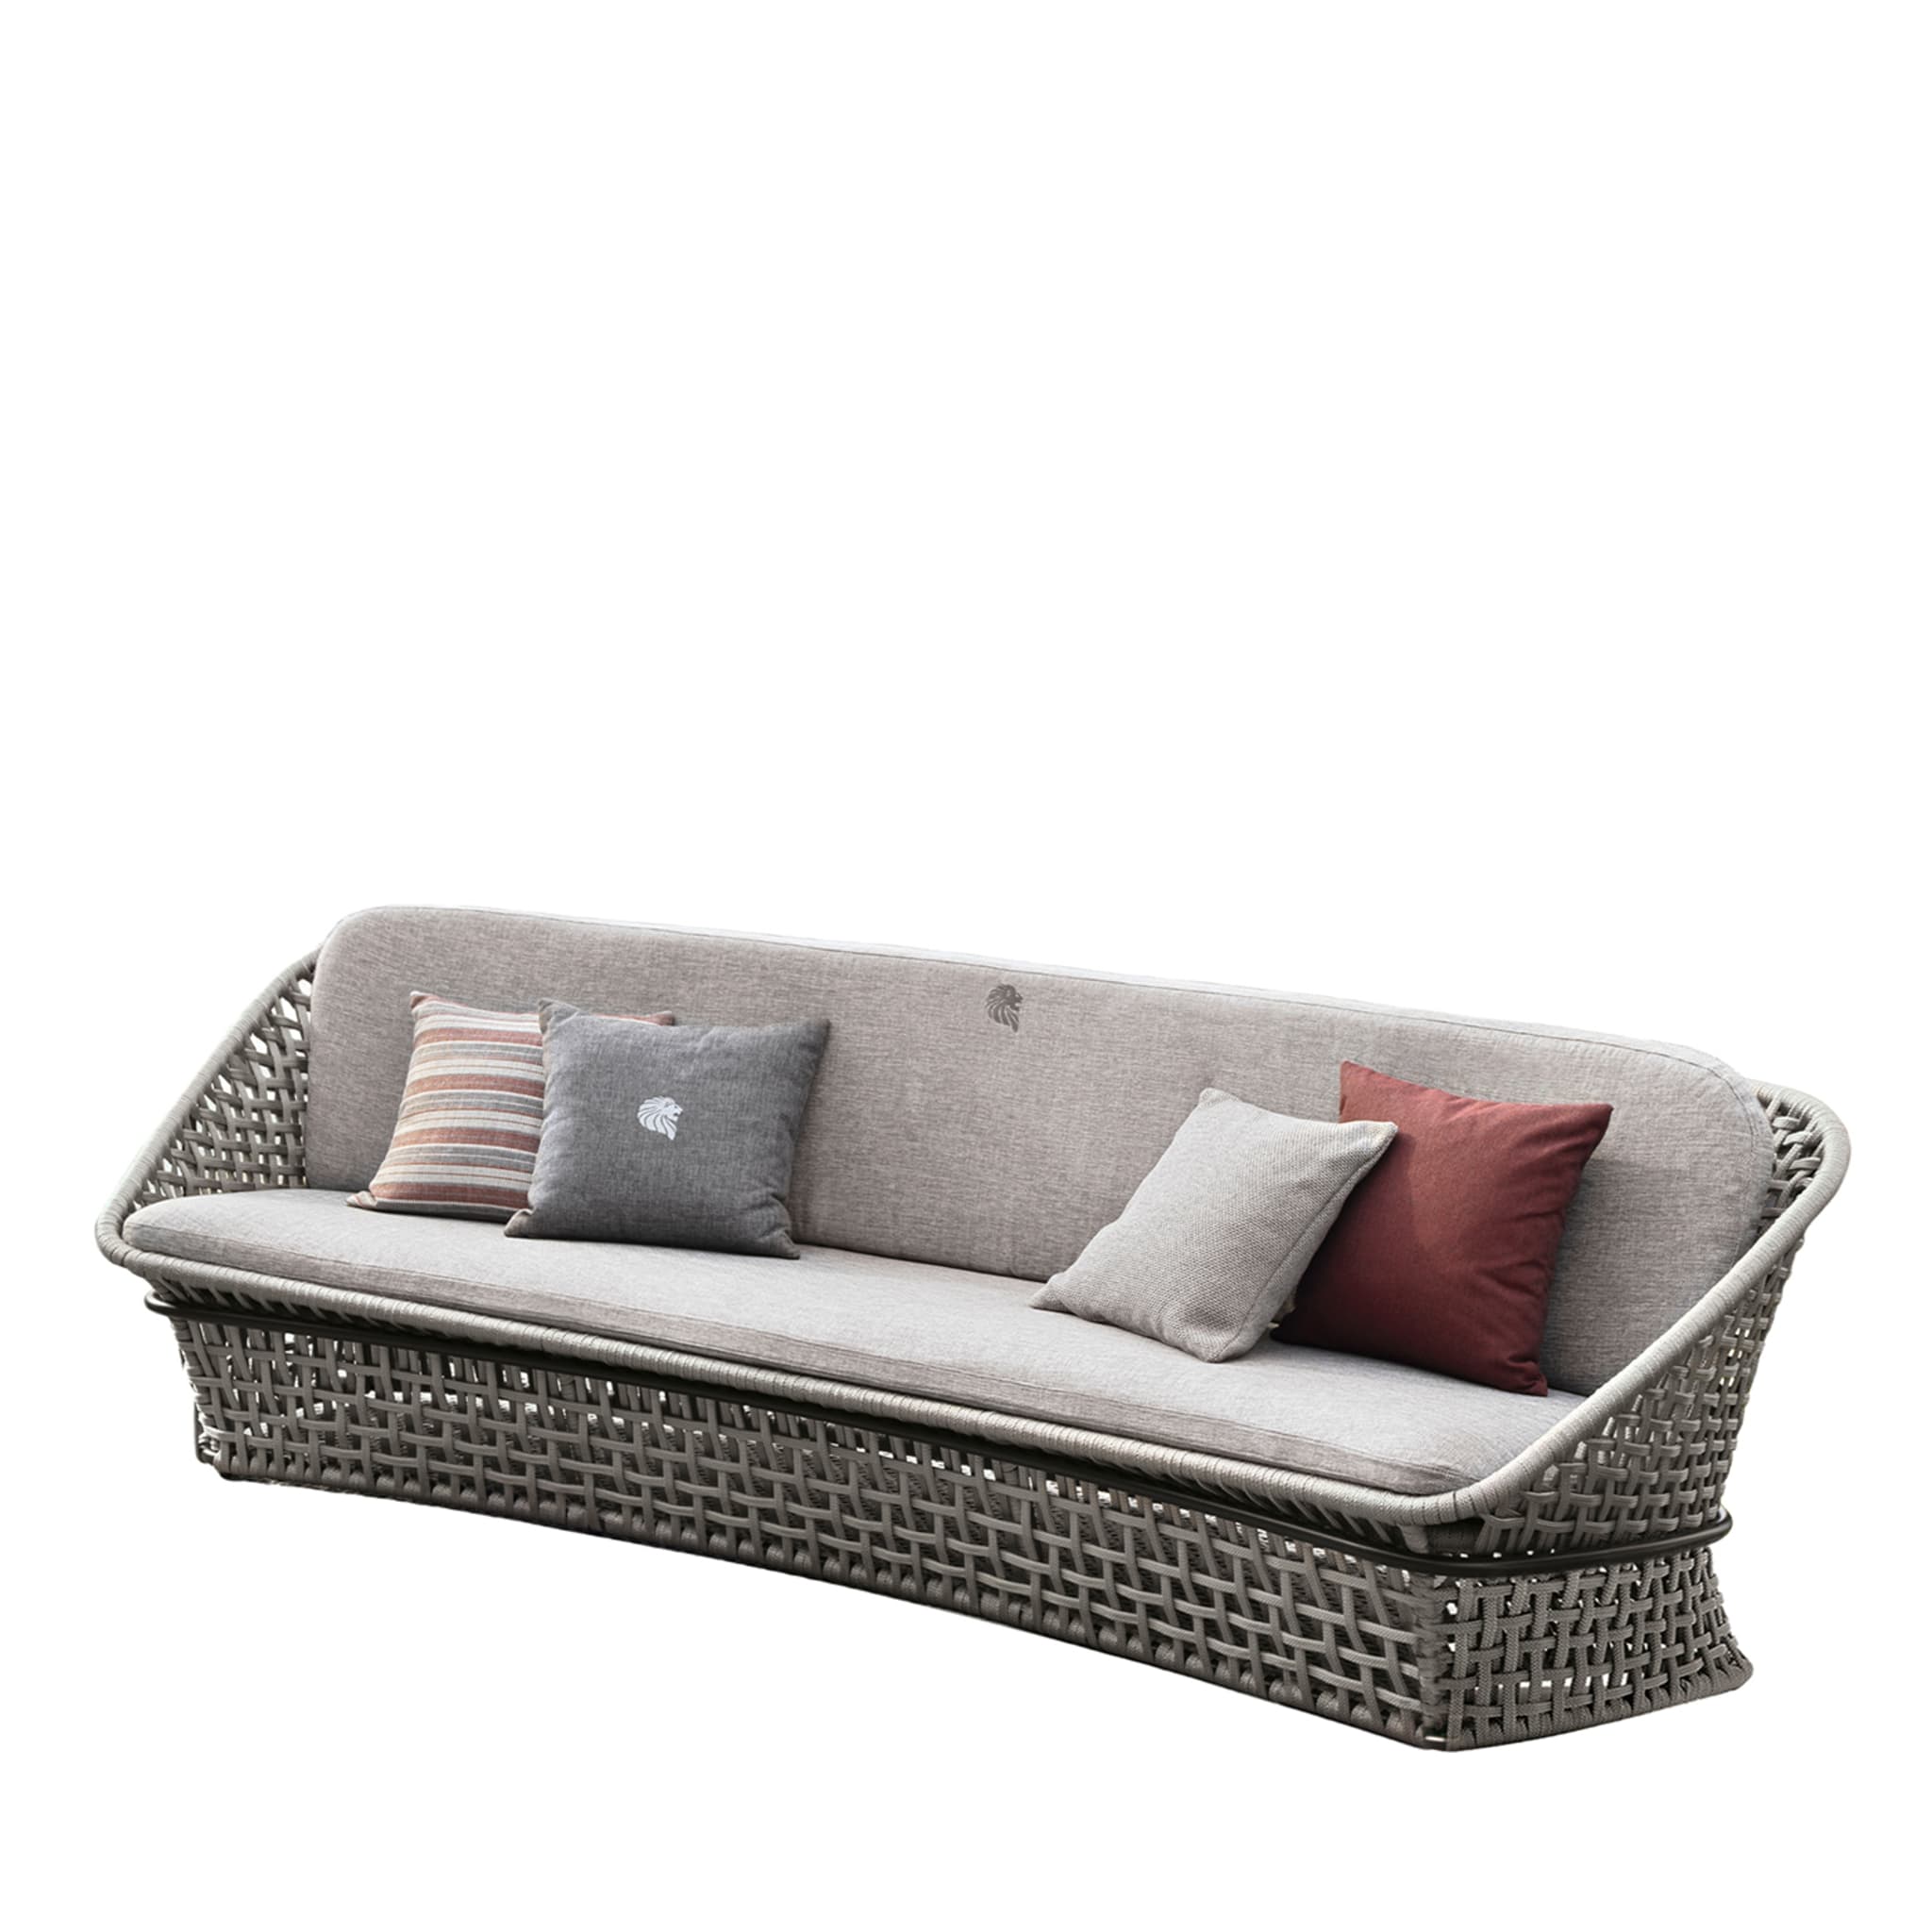 4-sitziges Sofa aus grauem Stoff für draußen - Hauptansicht